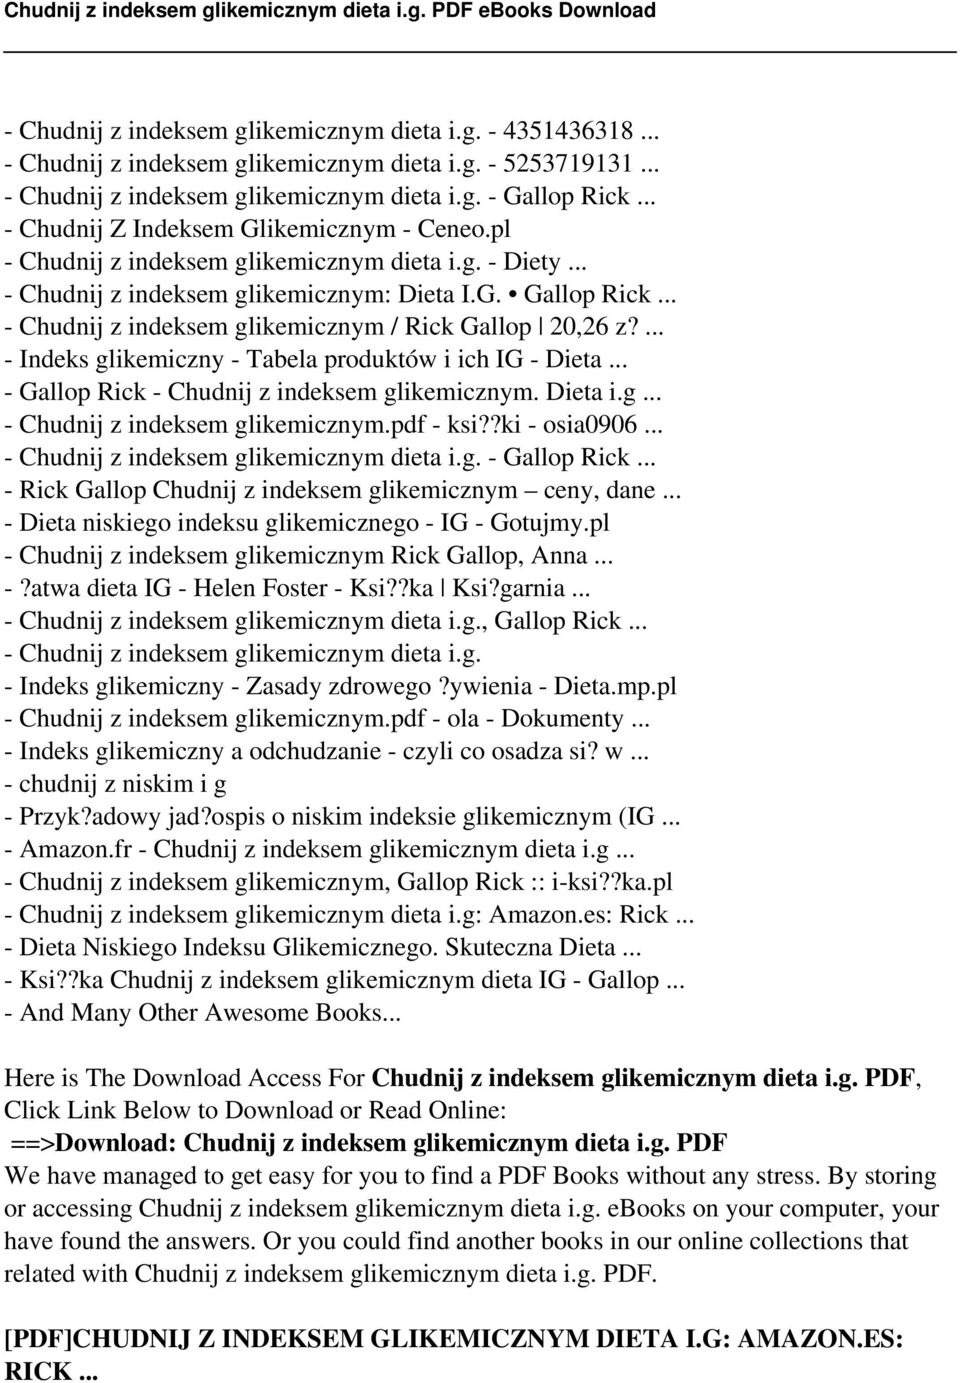 - Indeks glikemiczny - Tabela produktów i ich IG - Dieta - Gallop Rick - Chudnij z indeksem glikemicznym. Dieta i.g - Chudnij z indeksem glikemicznym.pdf - ksi?